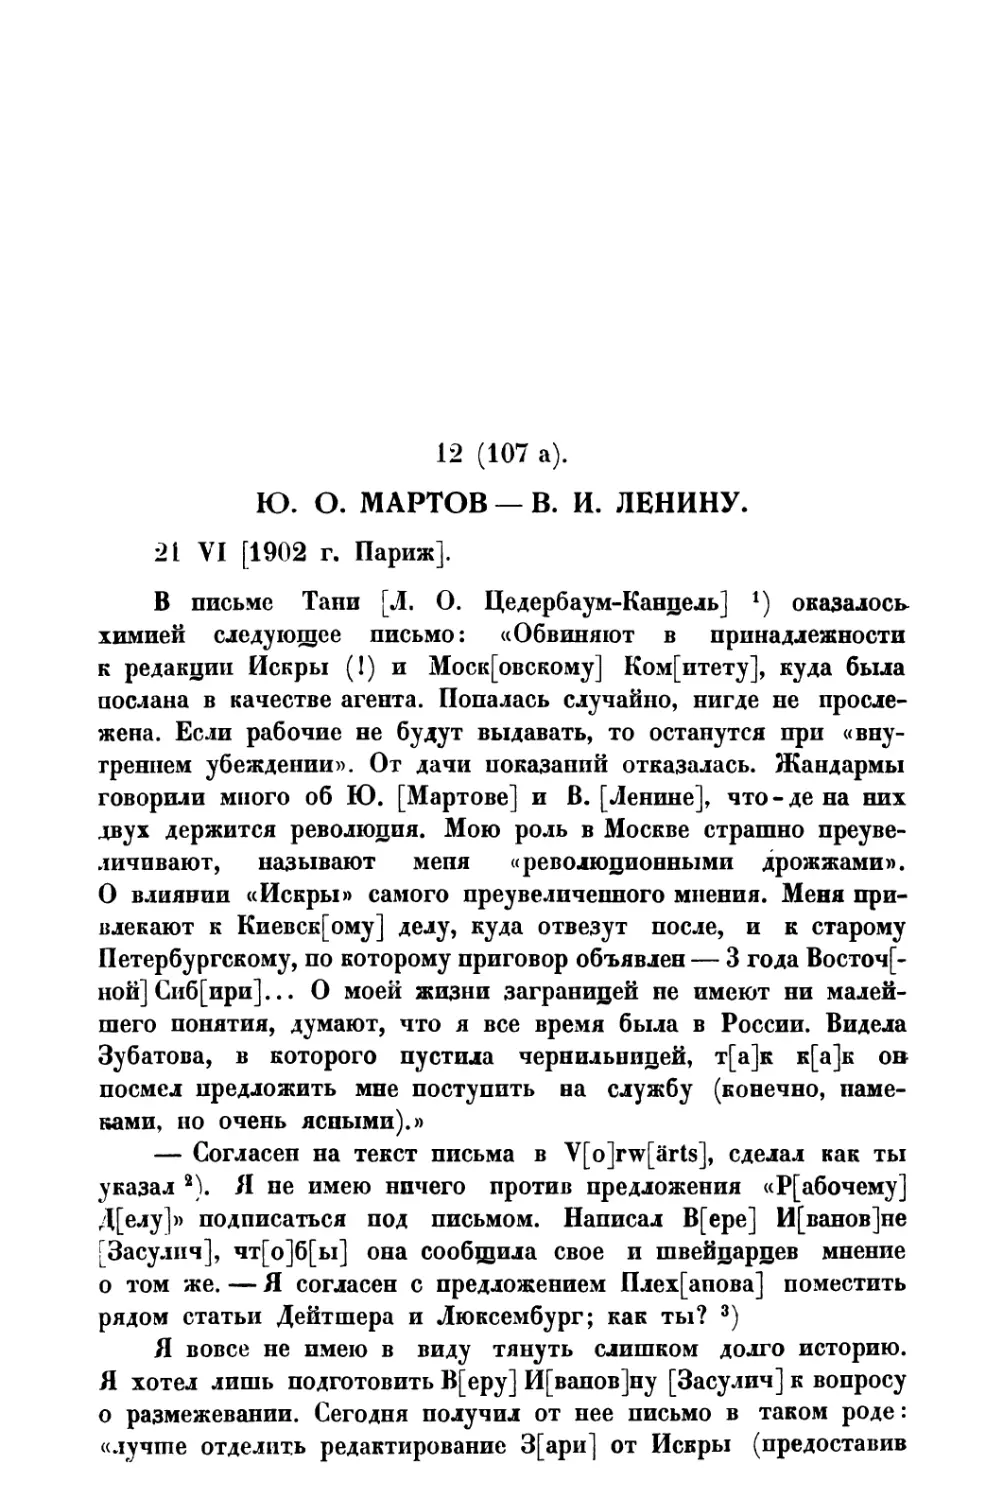 12. Ю. О. Мартов — В. И. Ленину от 21 VI 1902 г